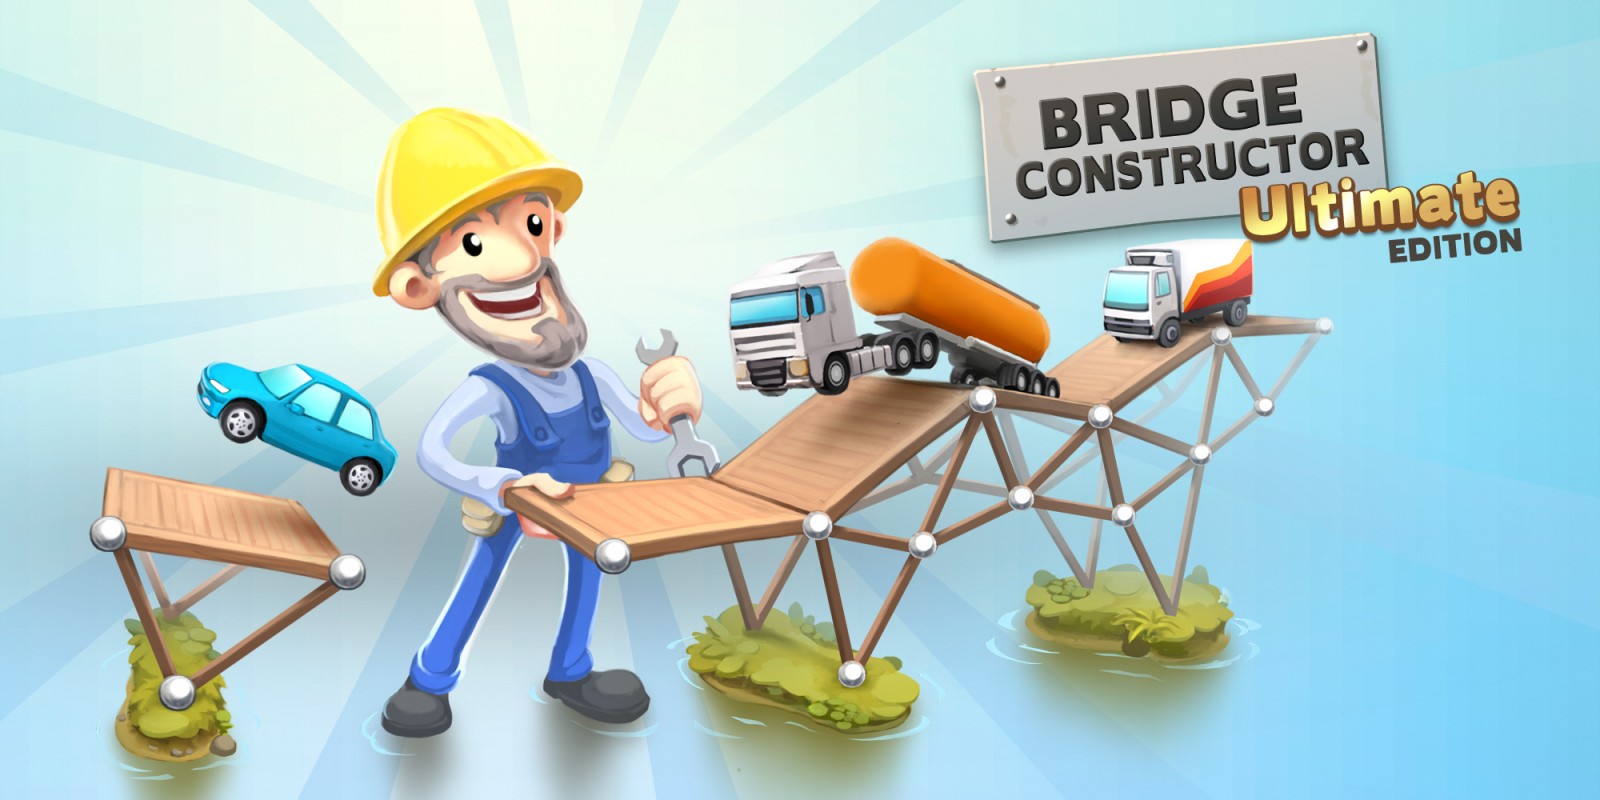 Bridge Constructor Ultimate Edition